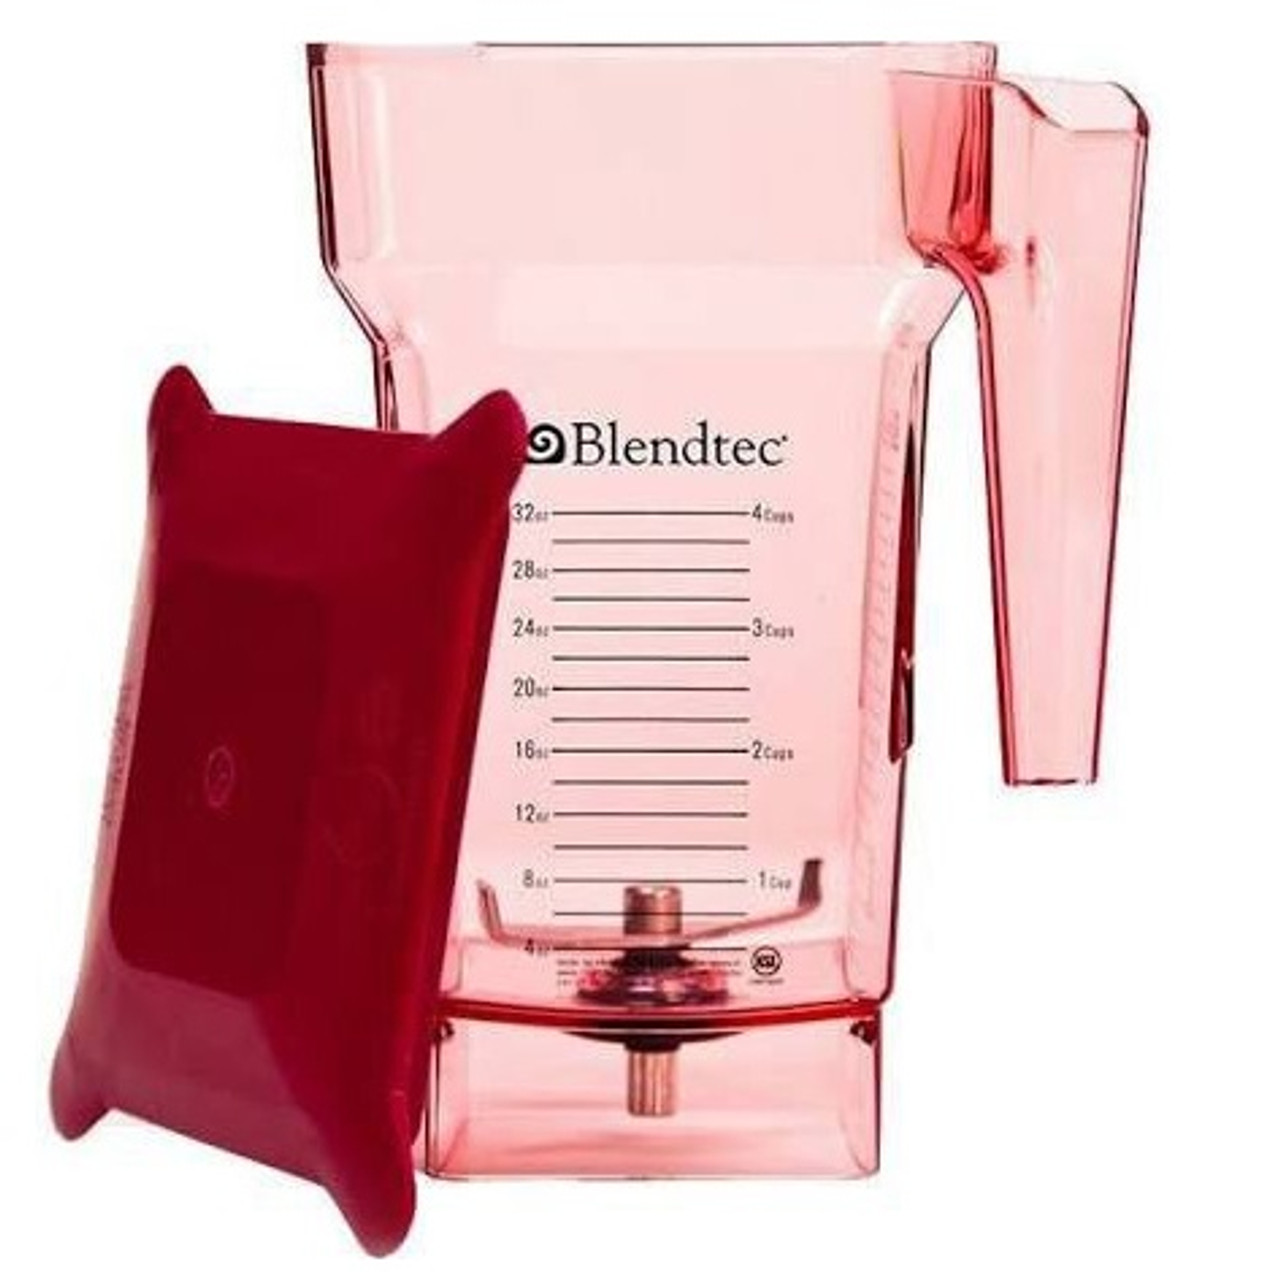 Blendtec Commercial FourSide Blender Jar